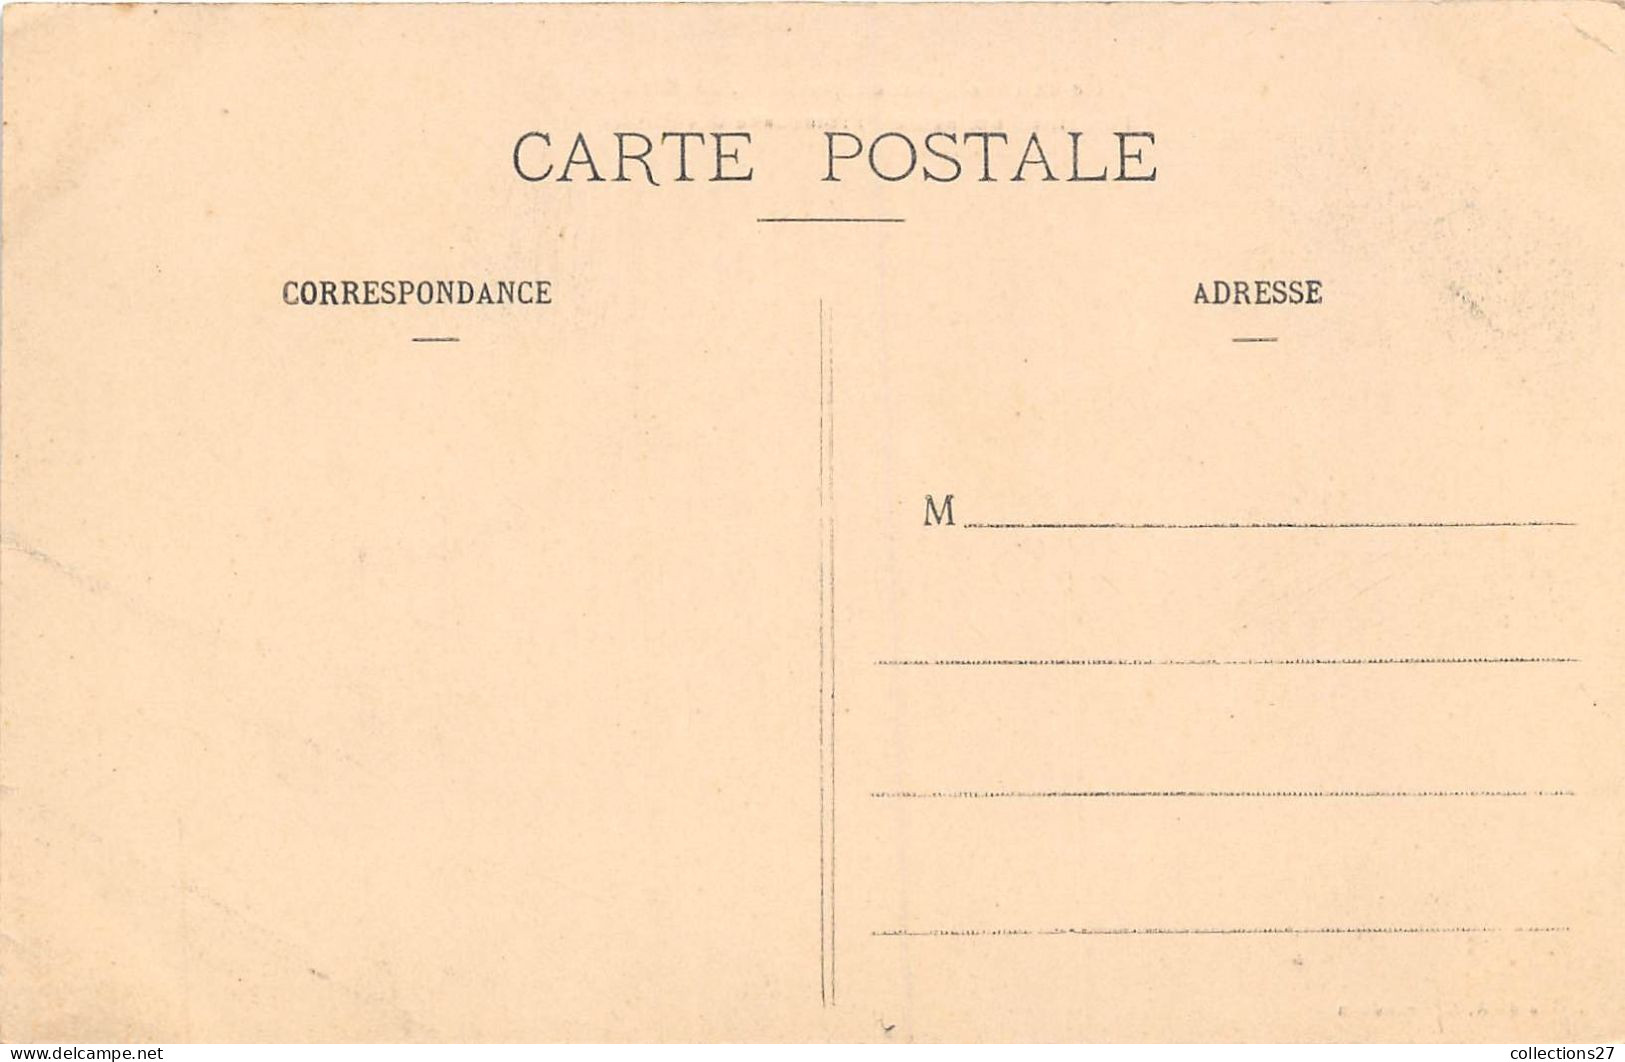 27-BRETEUIL- FÊTE DE L'INAUGURATION DES EAUX 28 MAI 1911 FONTAINE LUMINEUSE PROMENADE DES PLASSES - Breteuil